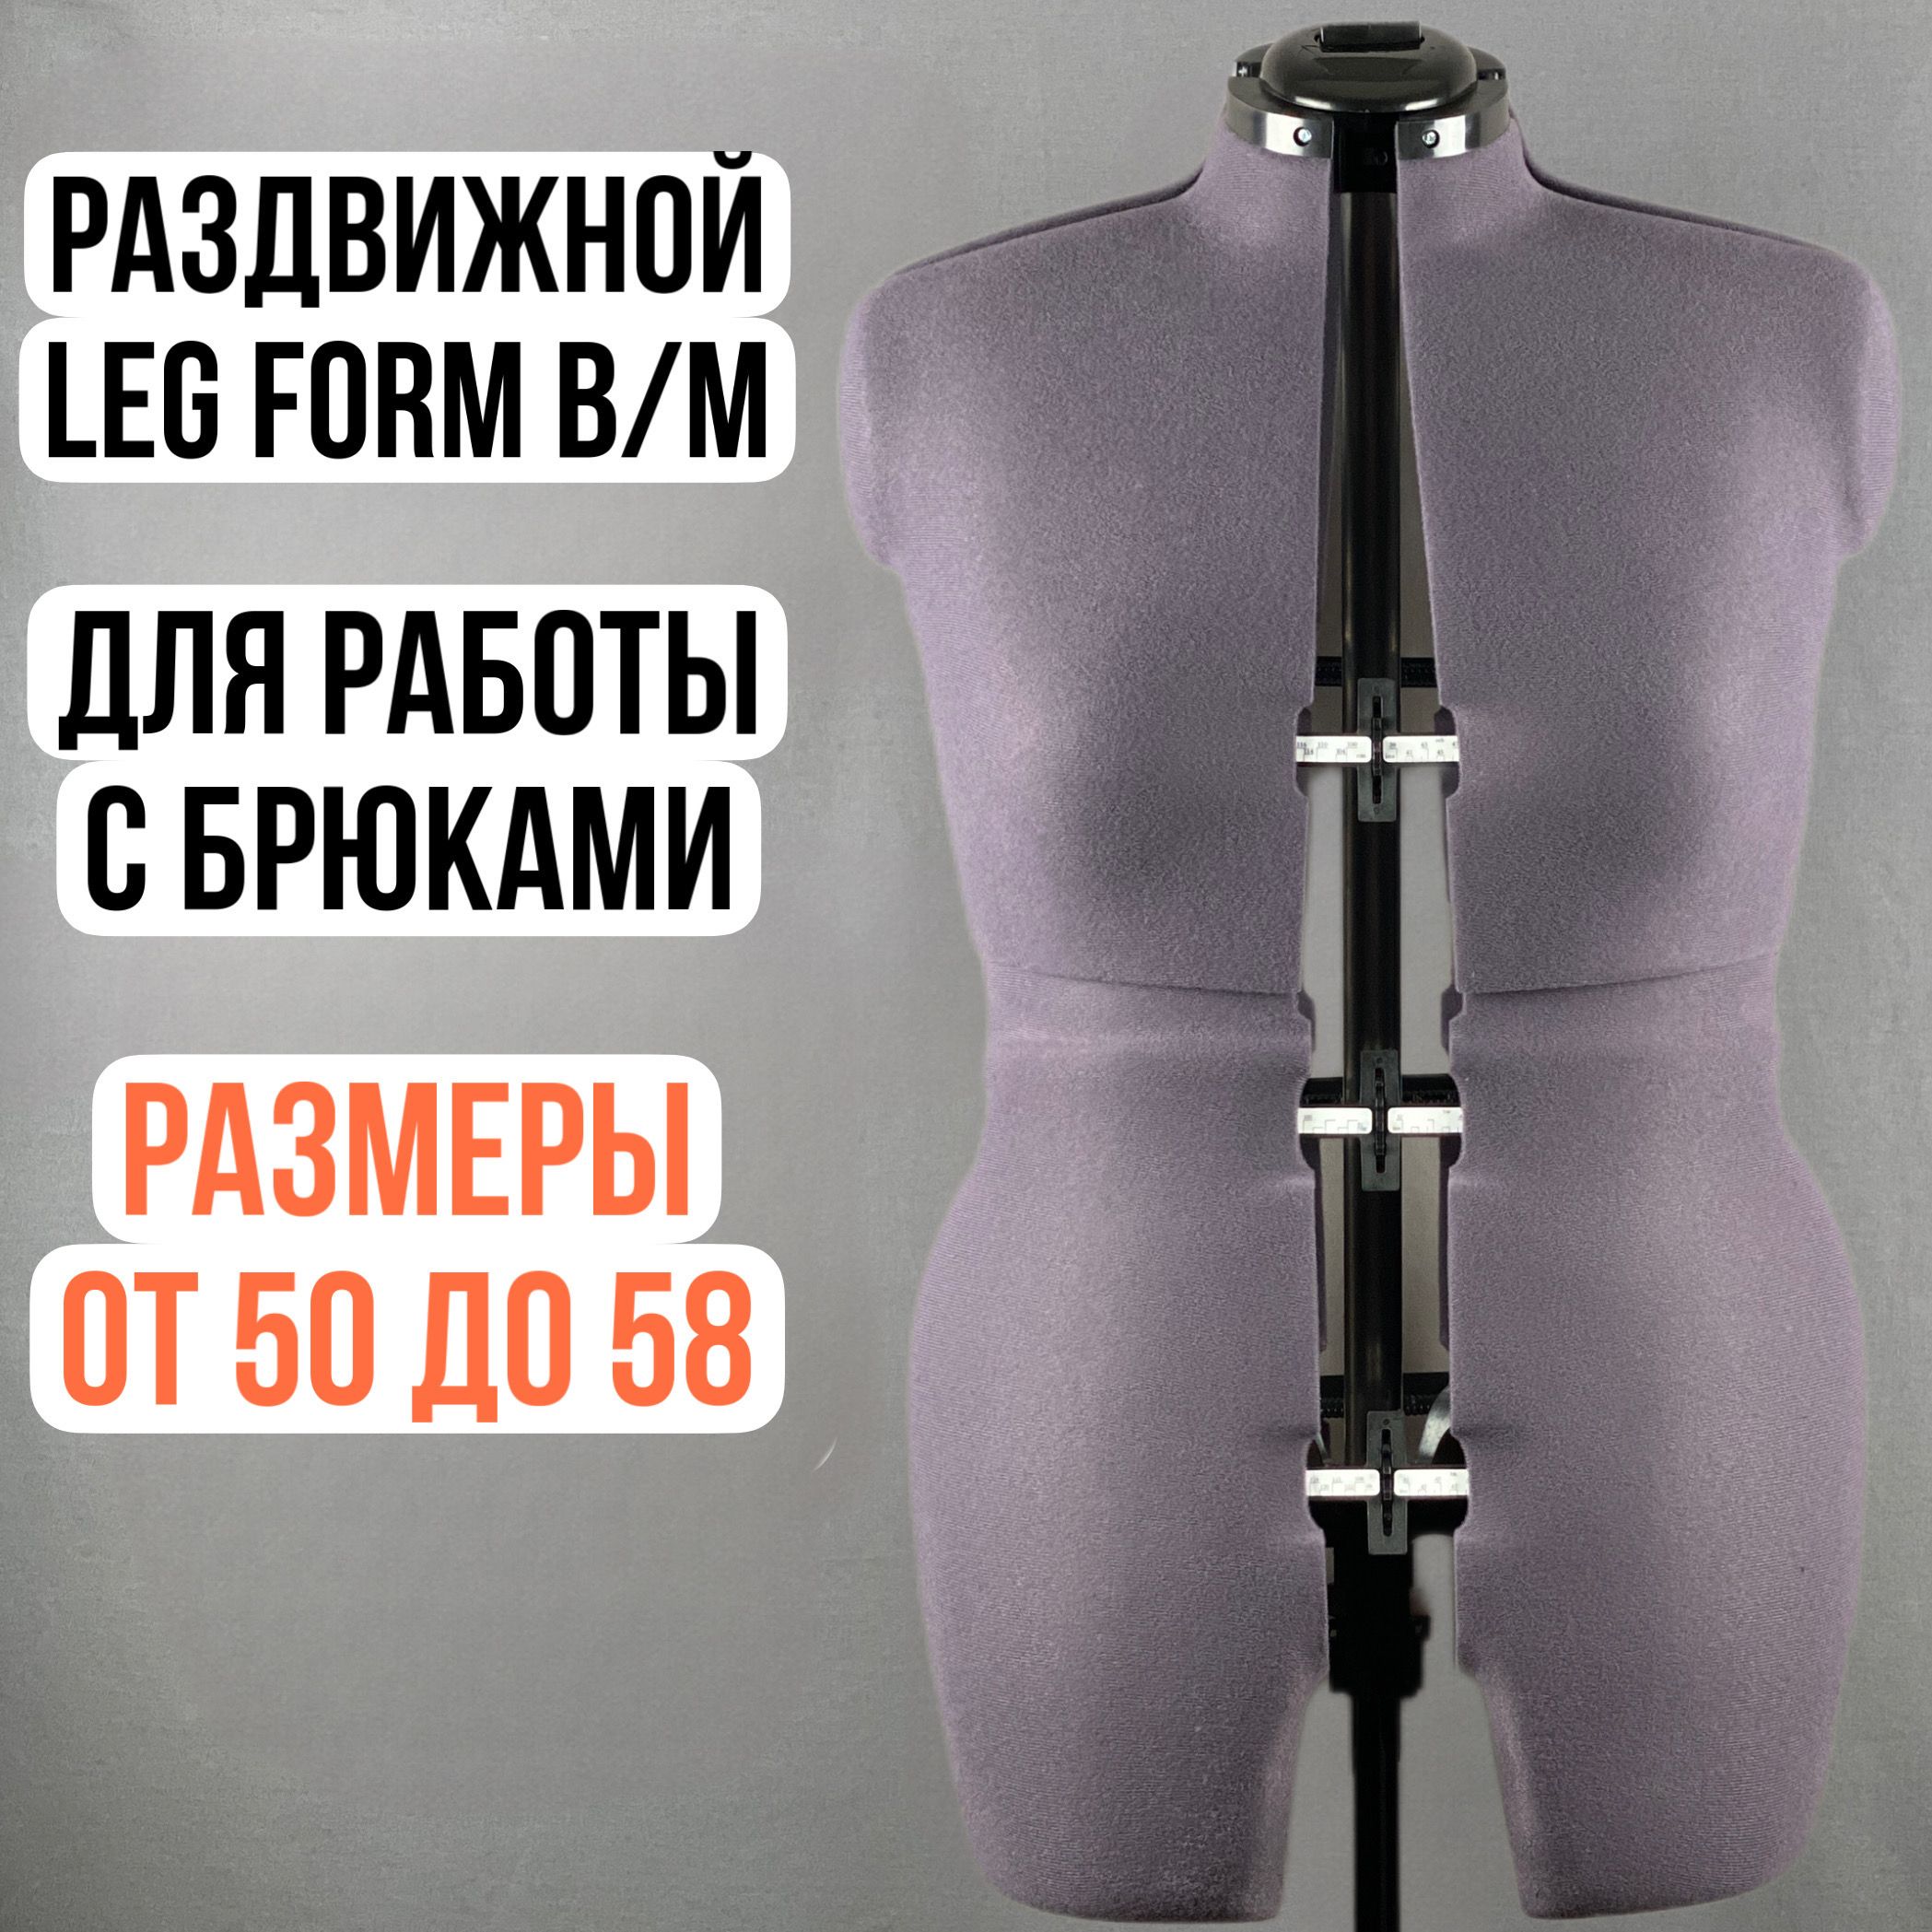 Leg form. Манекен для шитья раздвижной 44-52. Манекен портновский Adjustoform Tailormade b Saphire Blue.